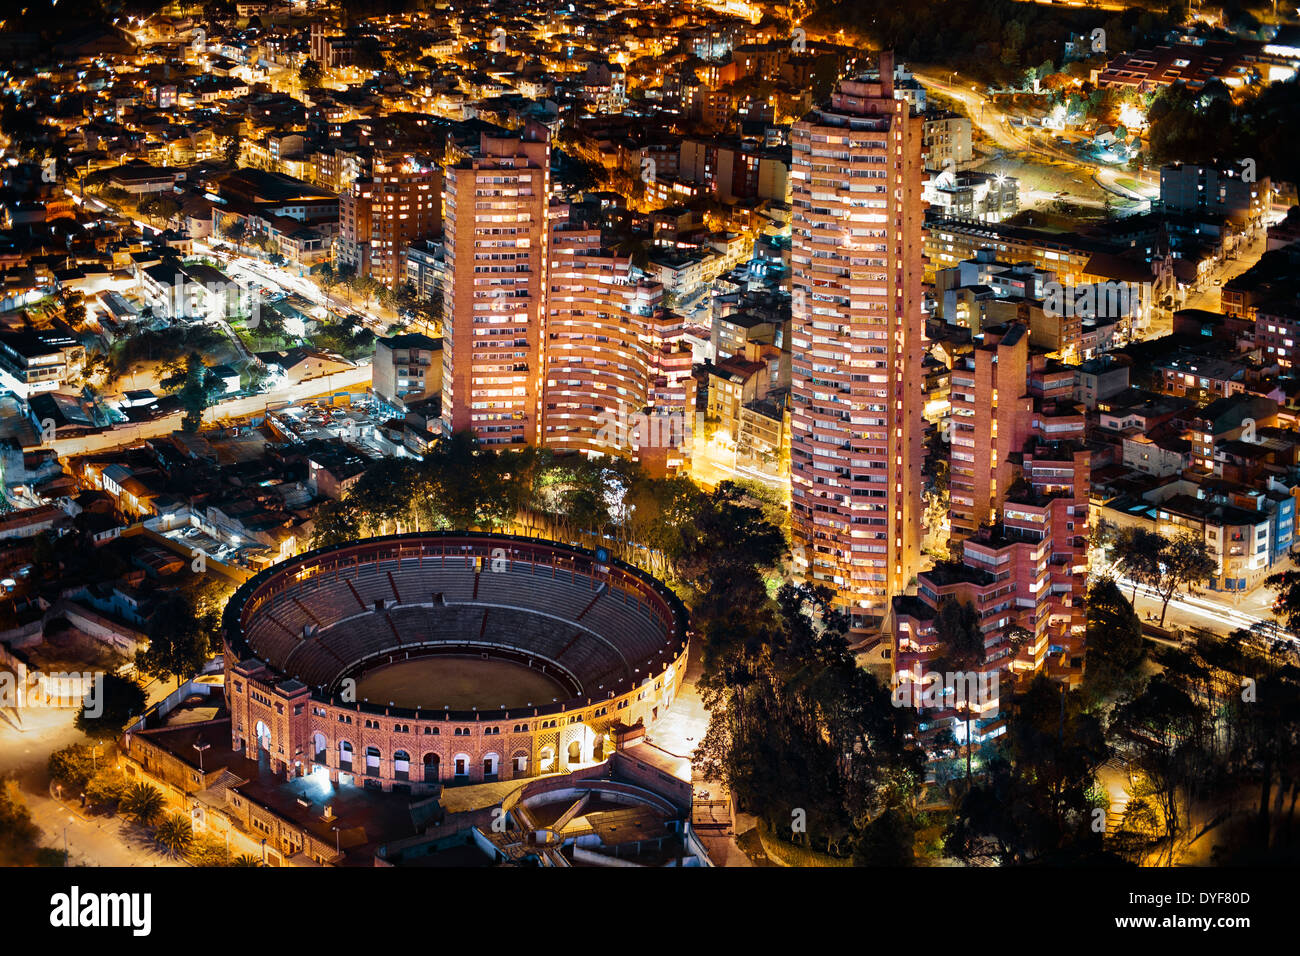 Santamaría Bullring (Plaza de Toros de Santamaría) in Bogotá, Colombia. Aerial view at night. Stock Photo